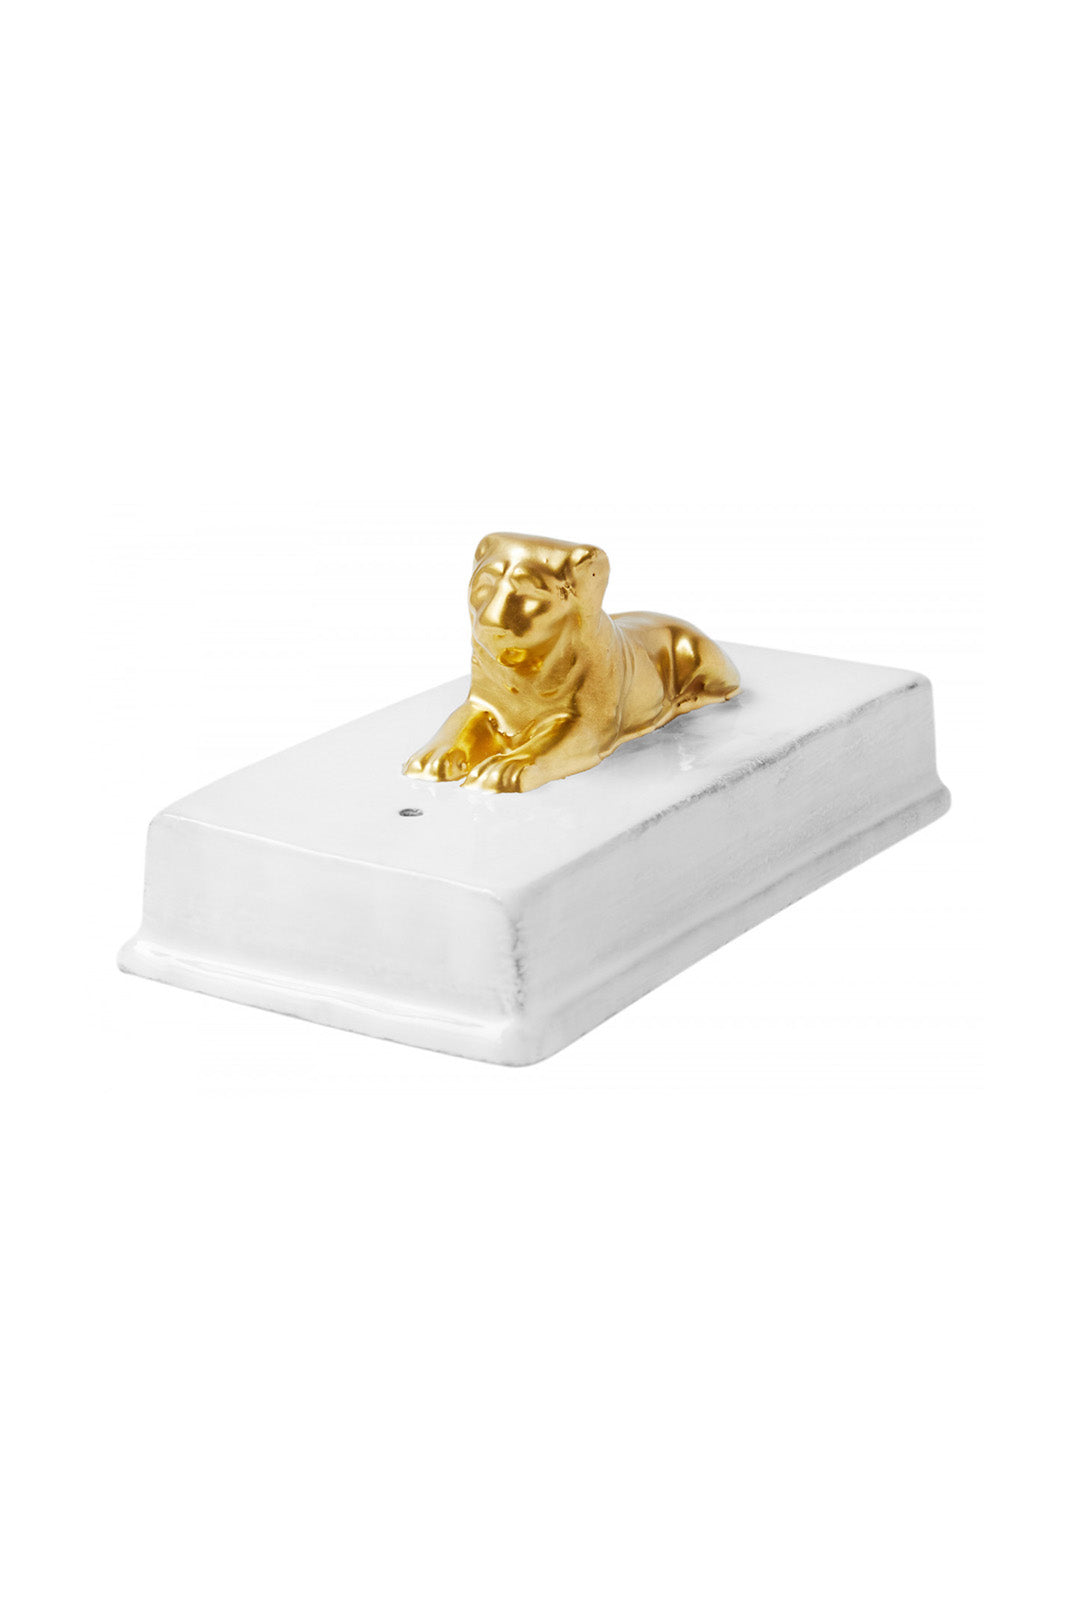 Gold Lion Incense Box